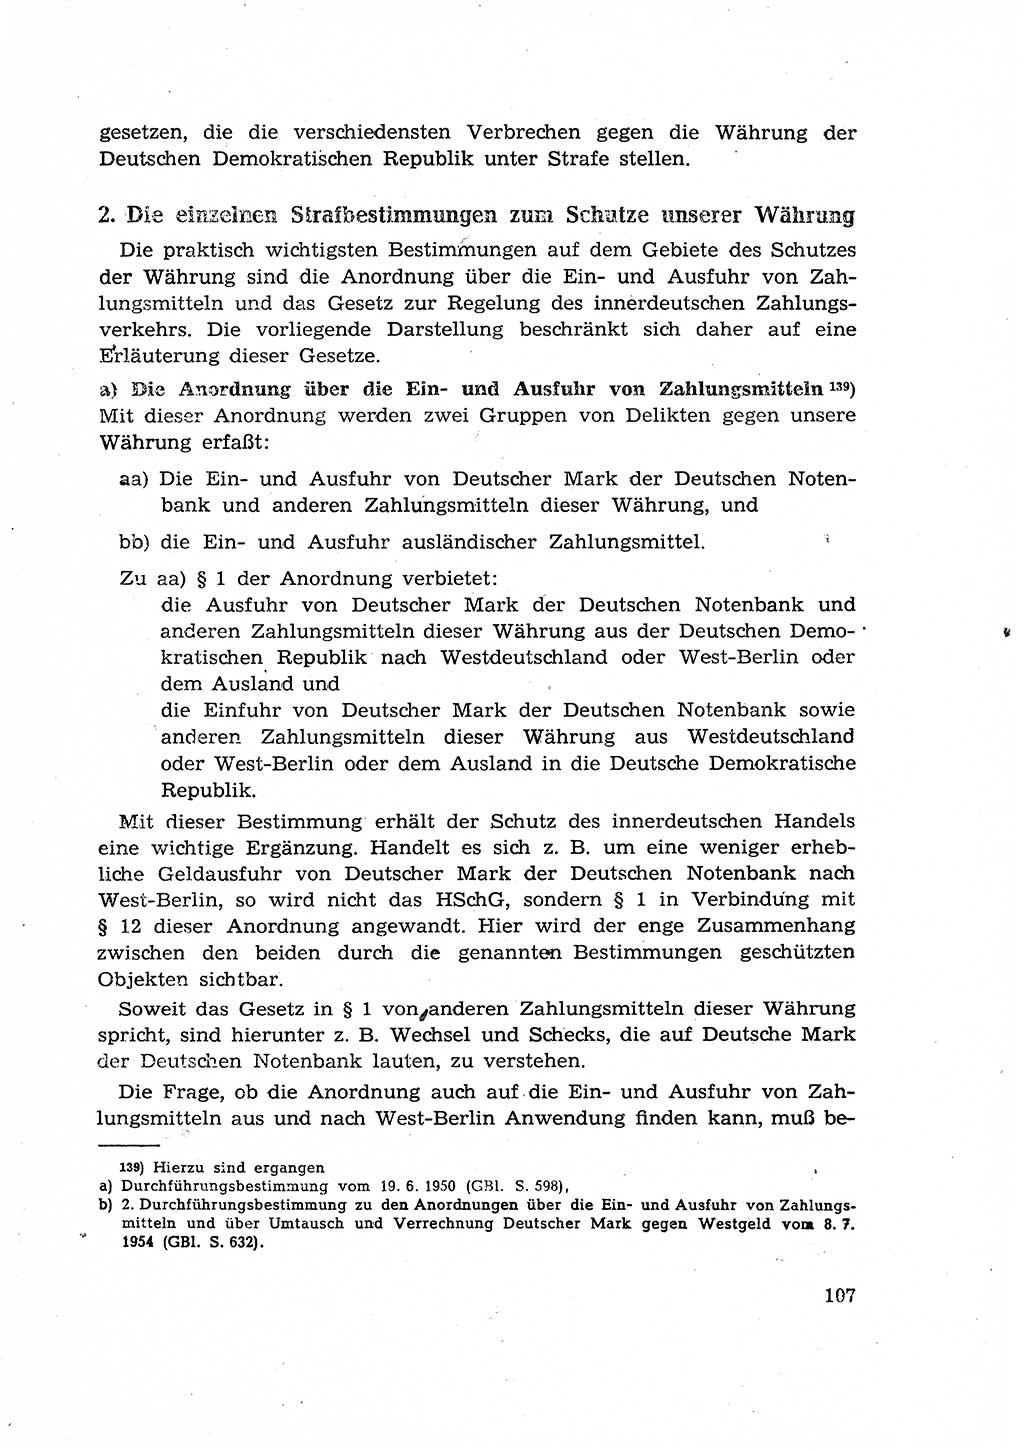 Materialien zum Strafrecht, Besonderer Teil [Deutsche Demokratische Republik (DDR)] 1955, Seite 107 (Mat. Strafr. BT DDR 1955, S. 107)